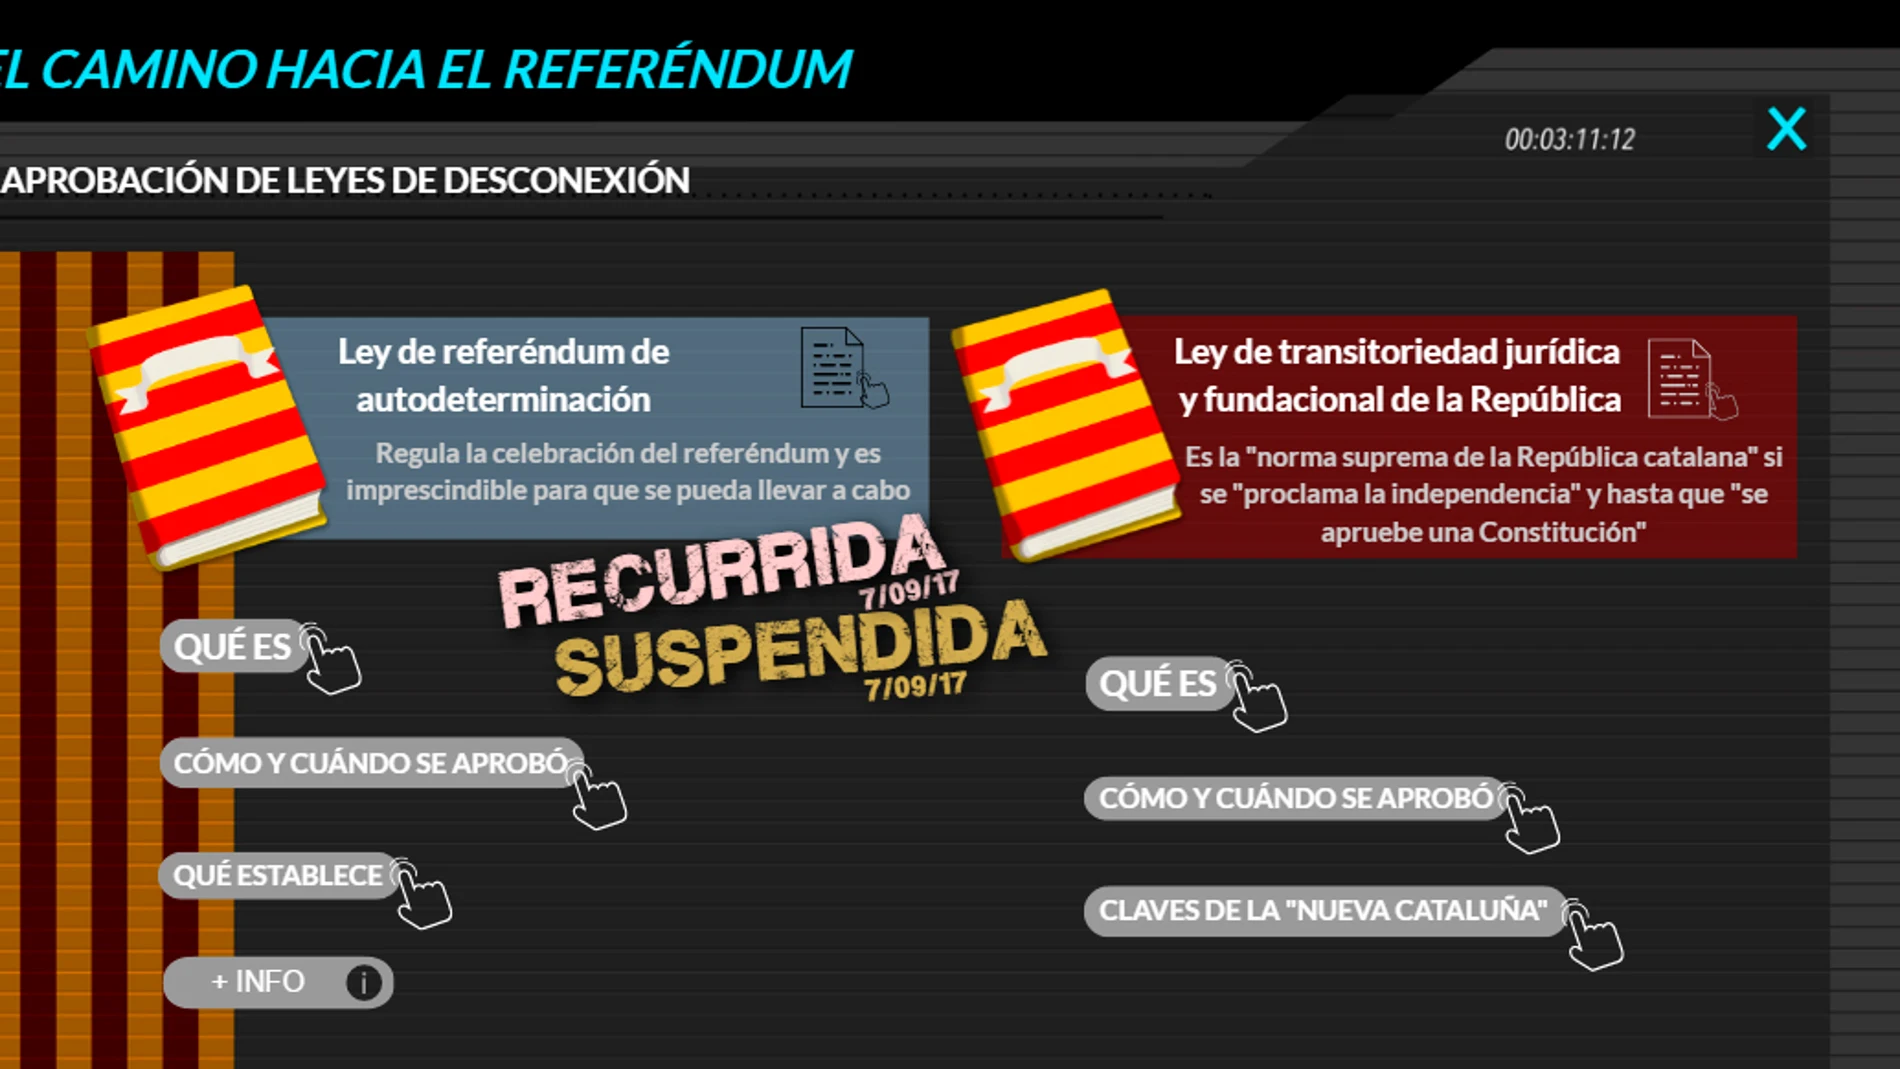 El camino hacia el referéndum de Cataluña